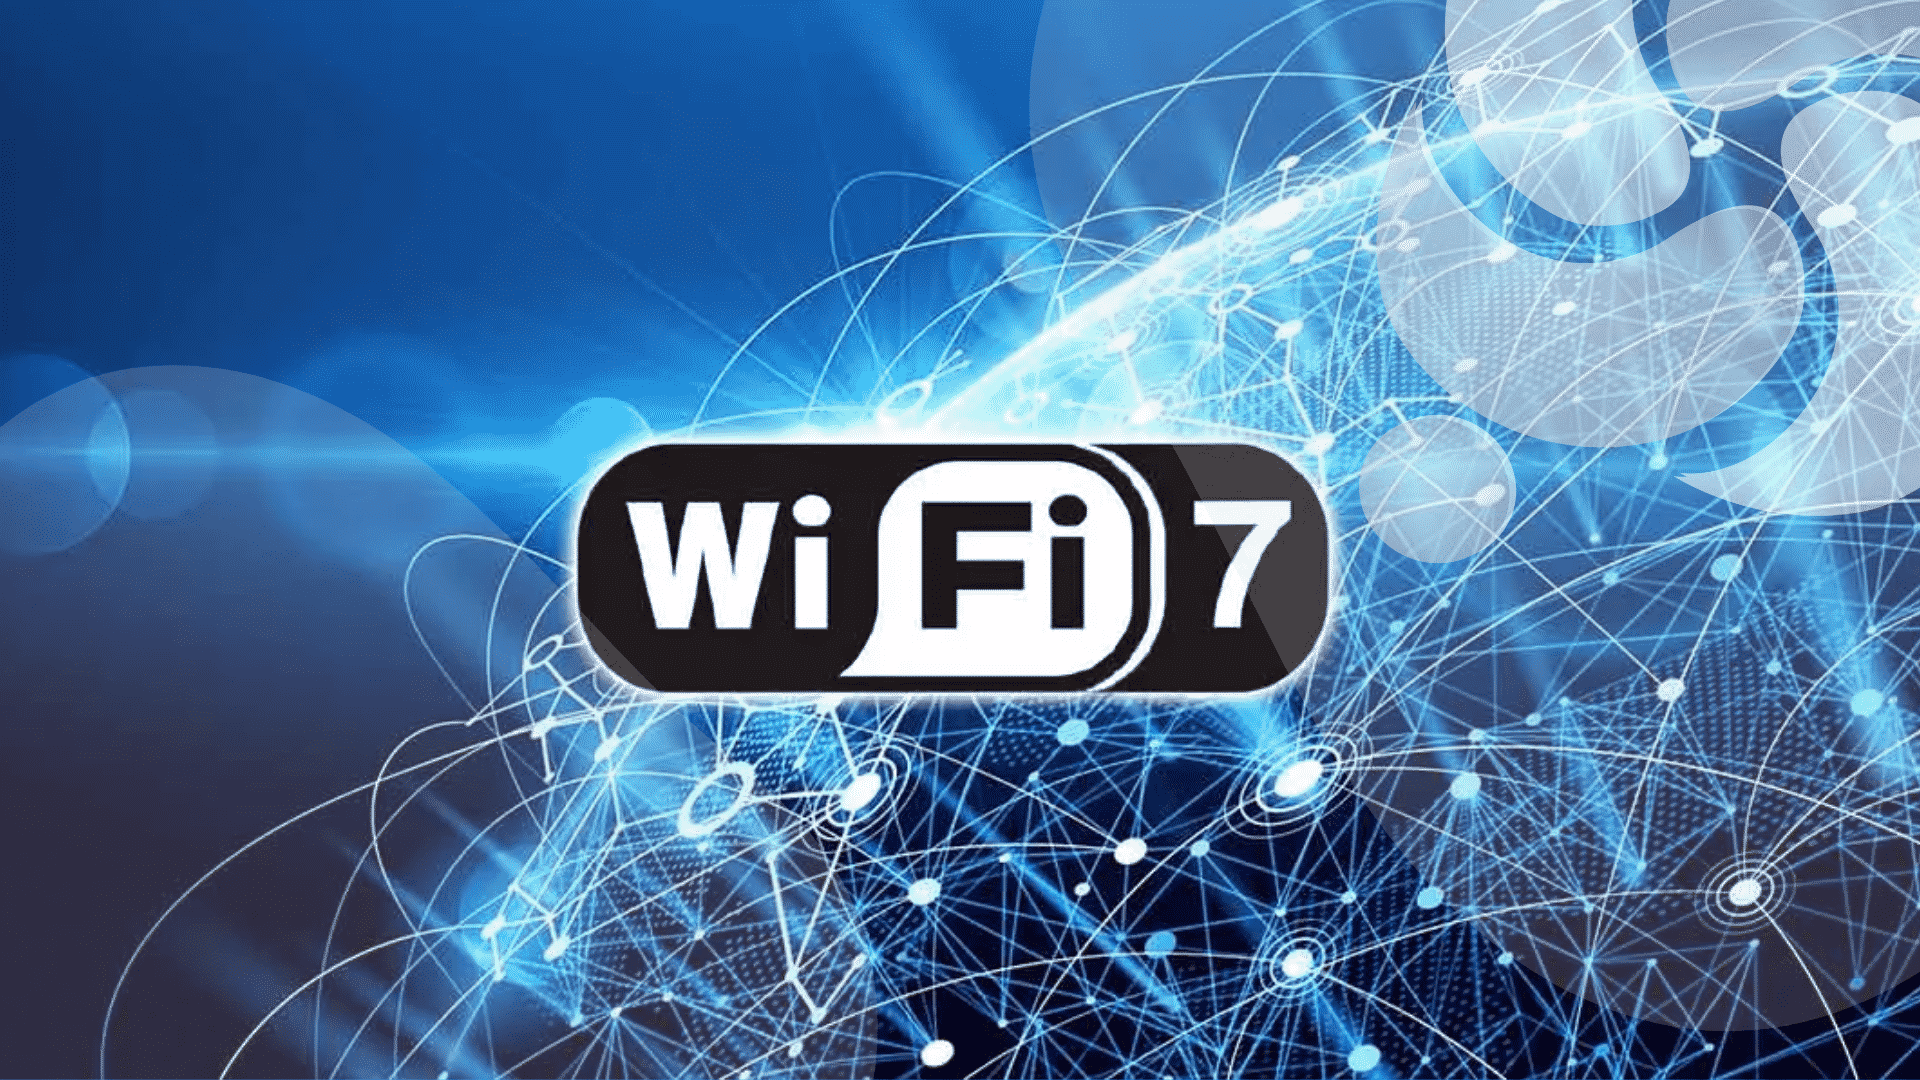 velocidades-wi-fi-7-de-33-gbps-chegarao-aos-roteadores-domesticos-no-proximo-ano